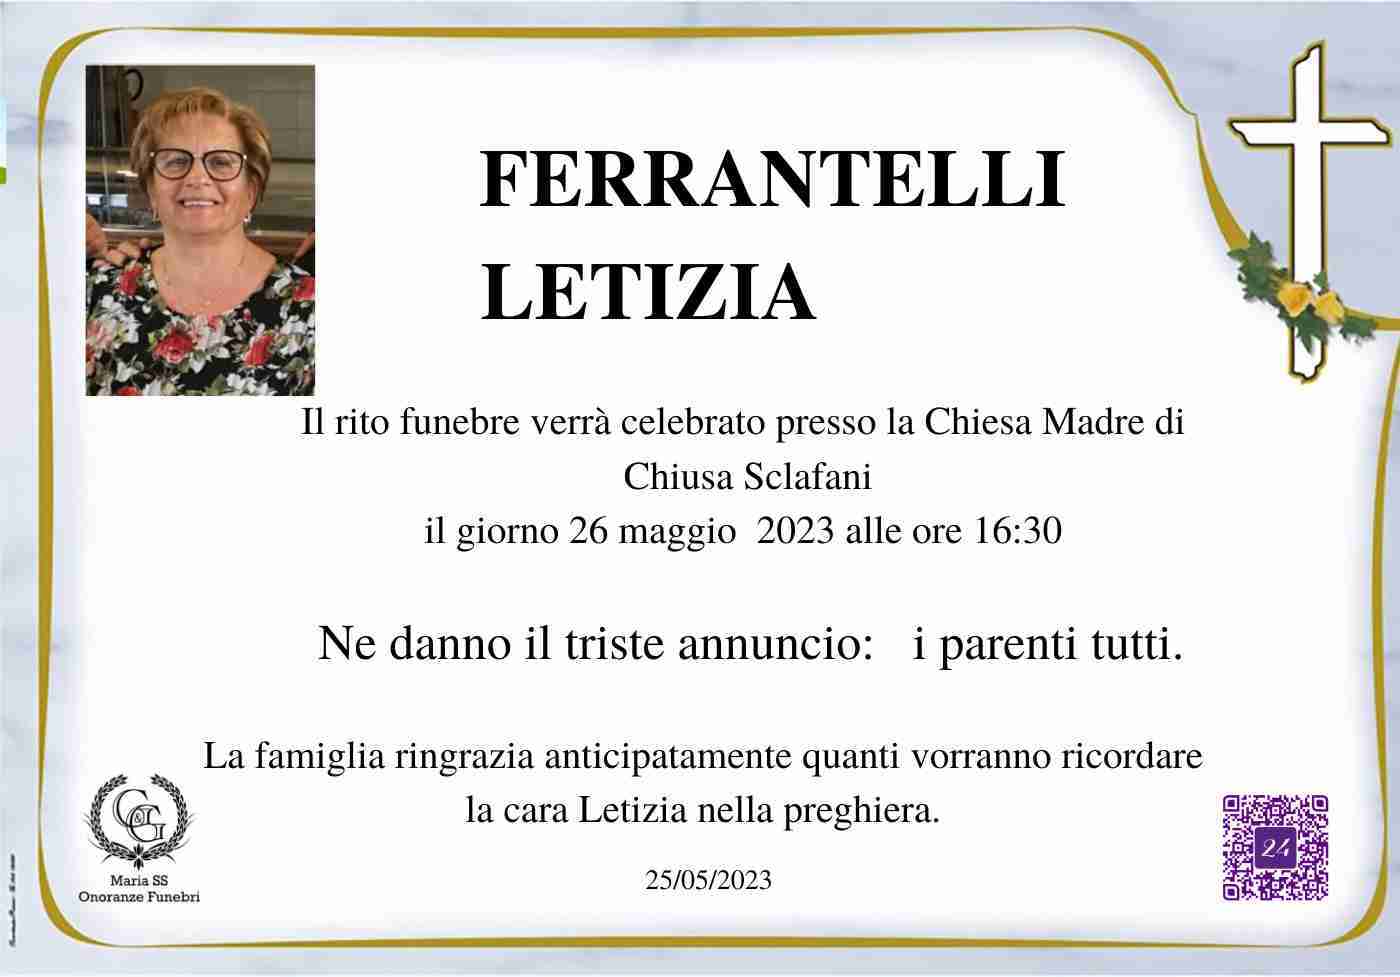 Letizia Ferrantelli